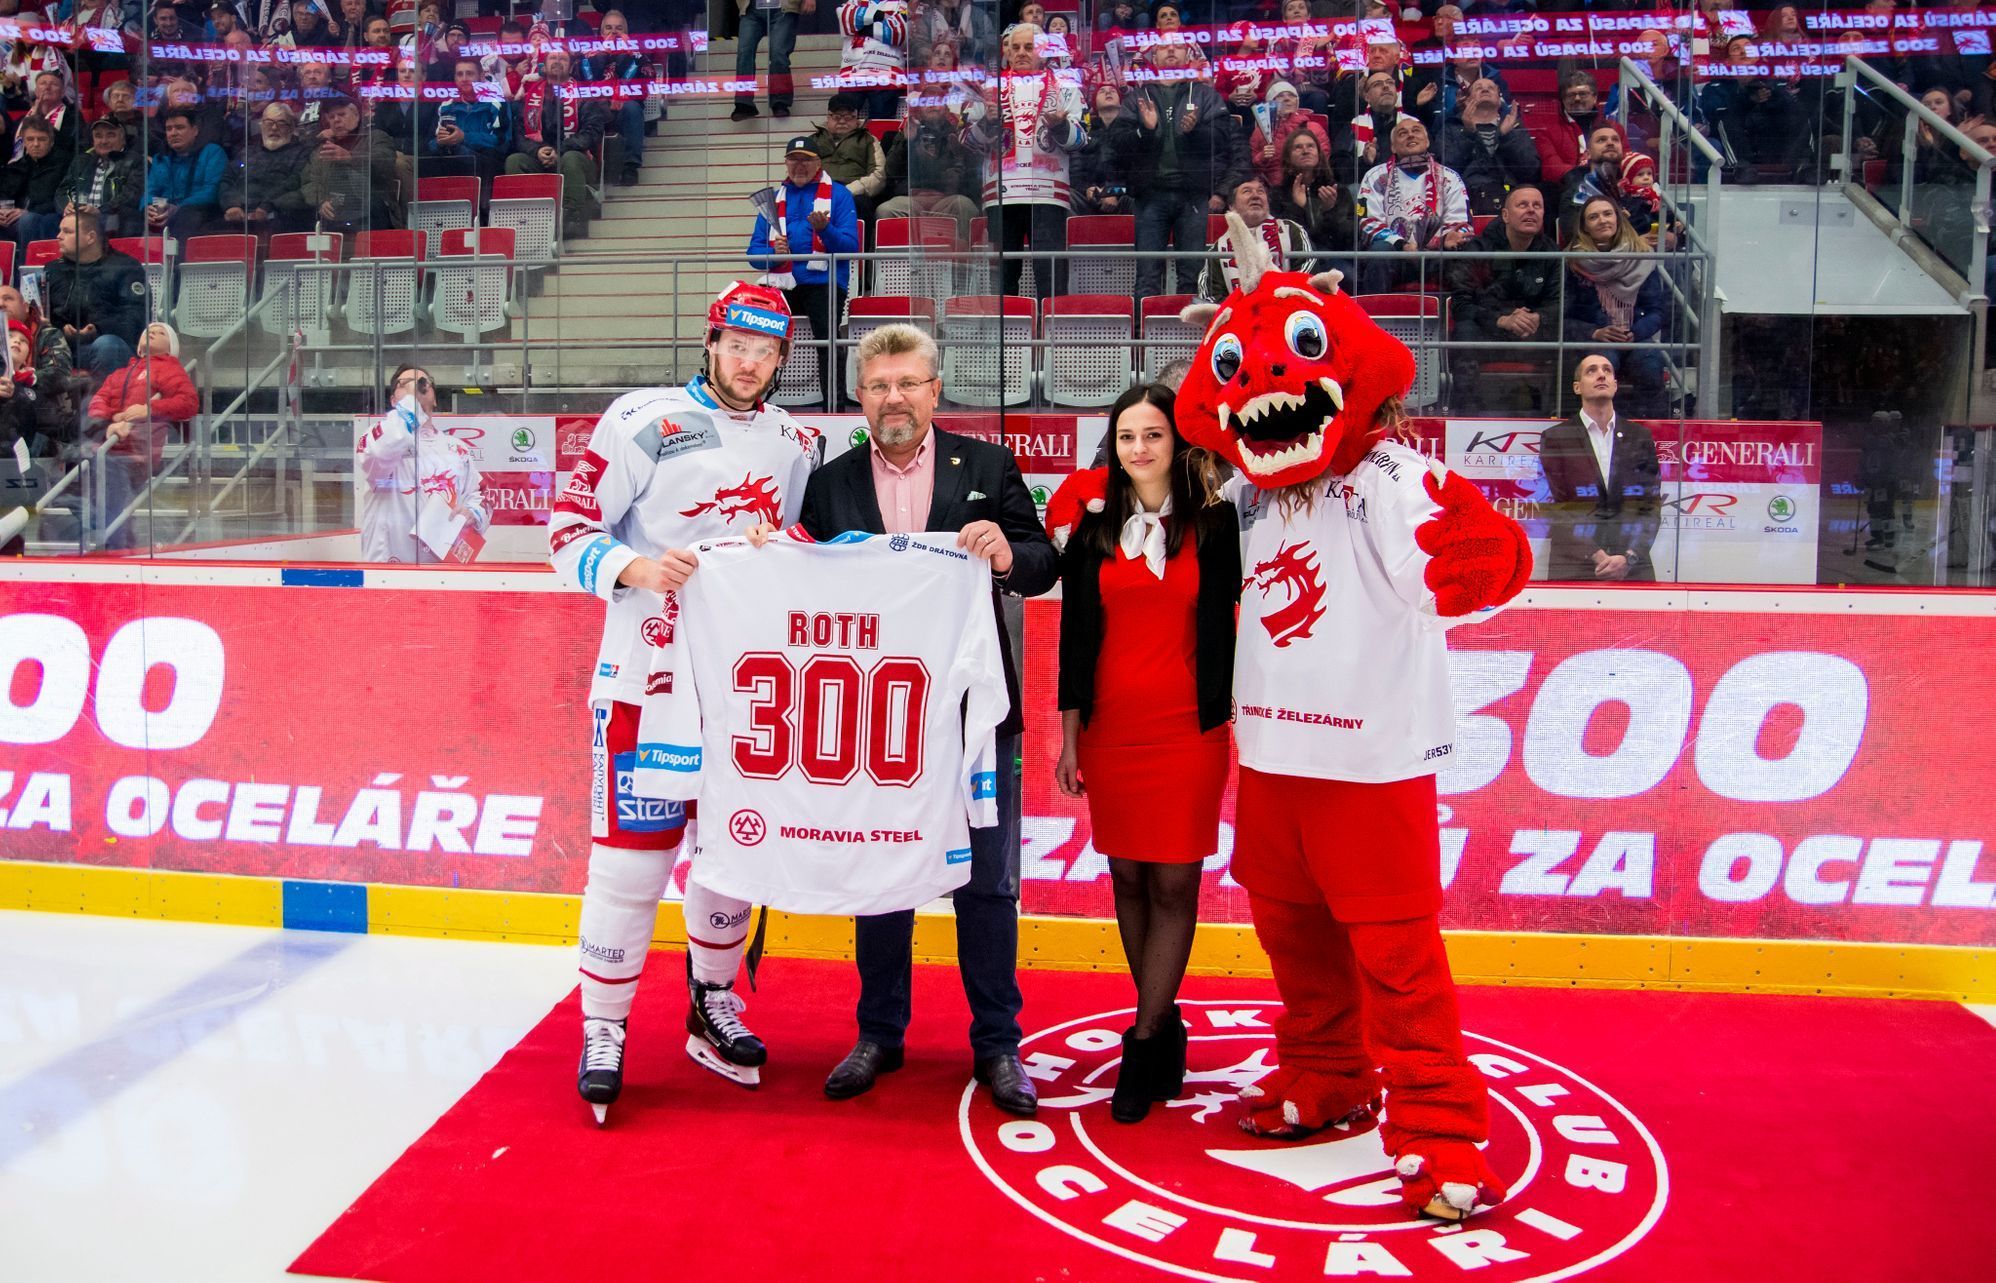 Hokejová extraliga 2018/19: Vladimír Roth odehrál za Třinec v extralize 300 utkání, na snímku pózuje s prezidentem Jánem Moderem.